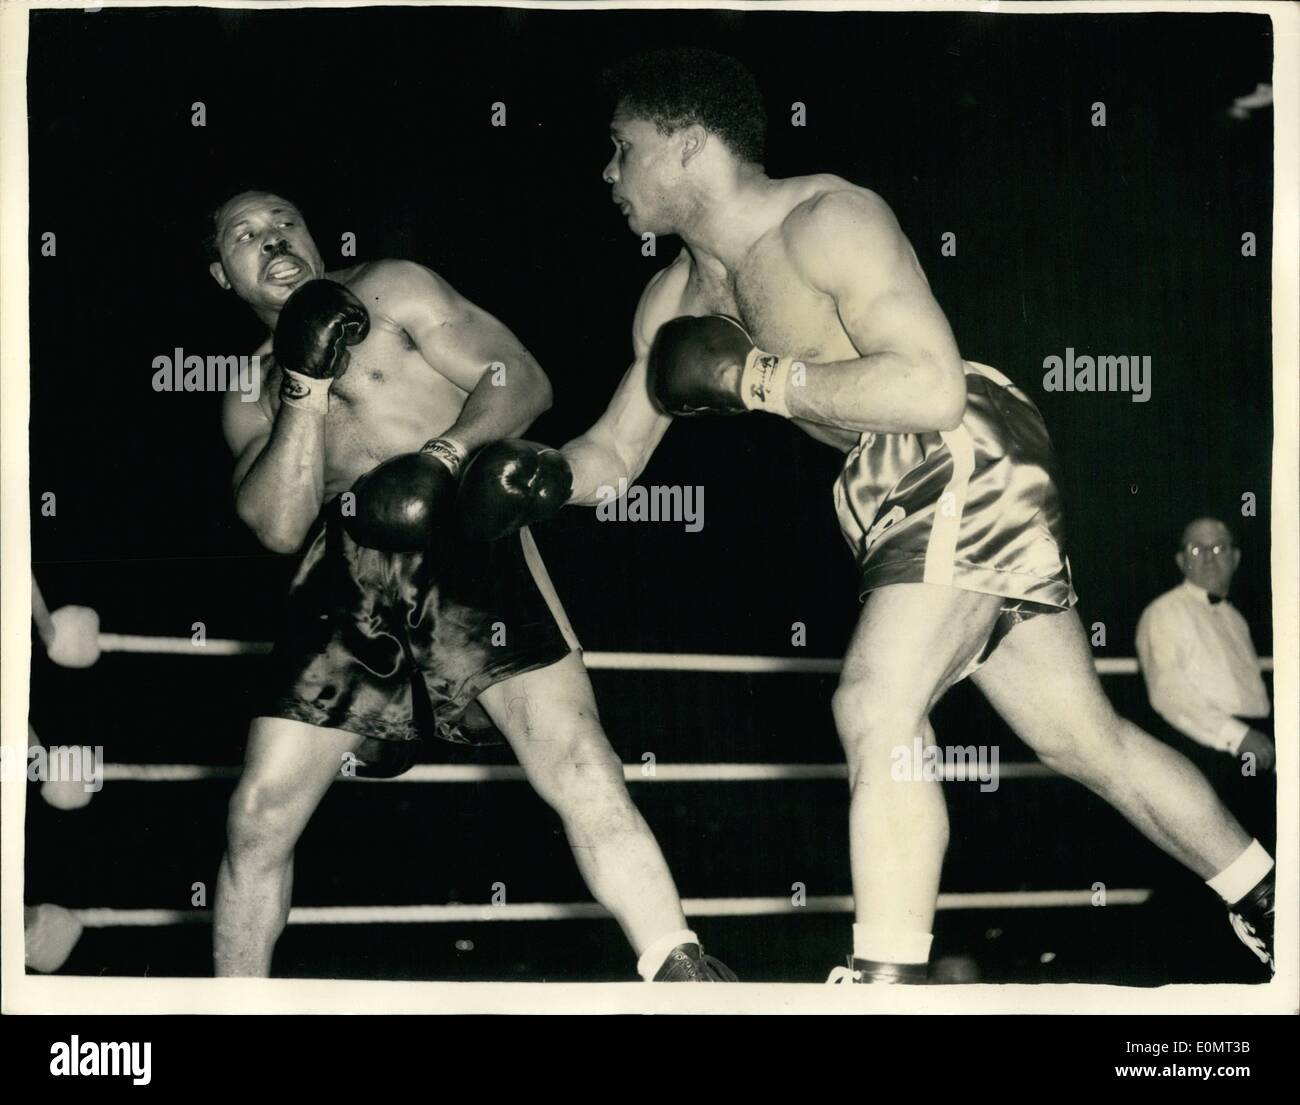 Juin 06, 1956 - Archie Moore conserve le titre de champion de la lumière.  contre Yolande pompey à Haringay : Archie Moore le light heavyweight  champion du monde, a conservé son titre